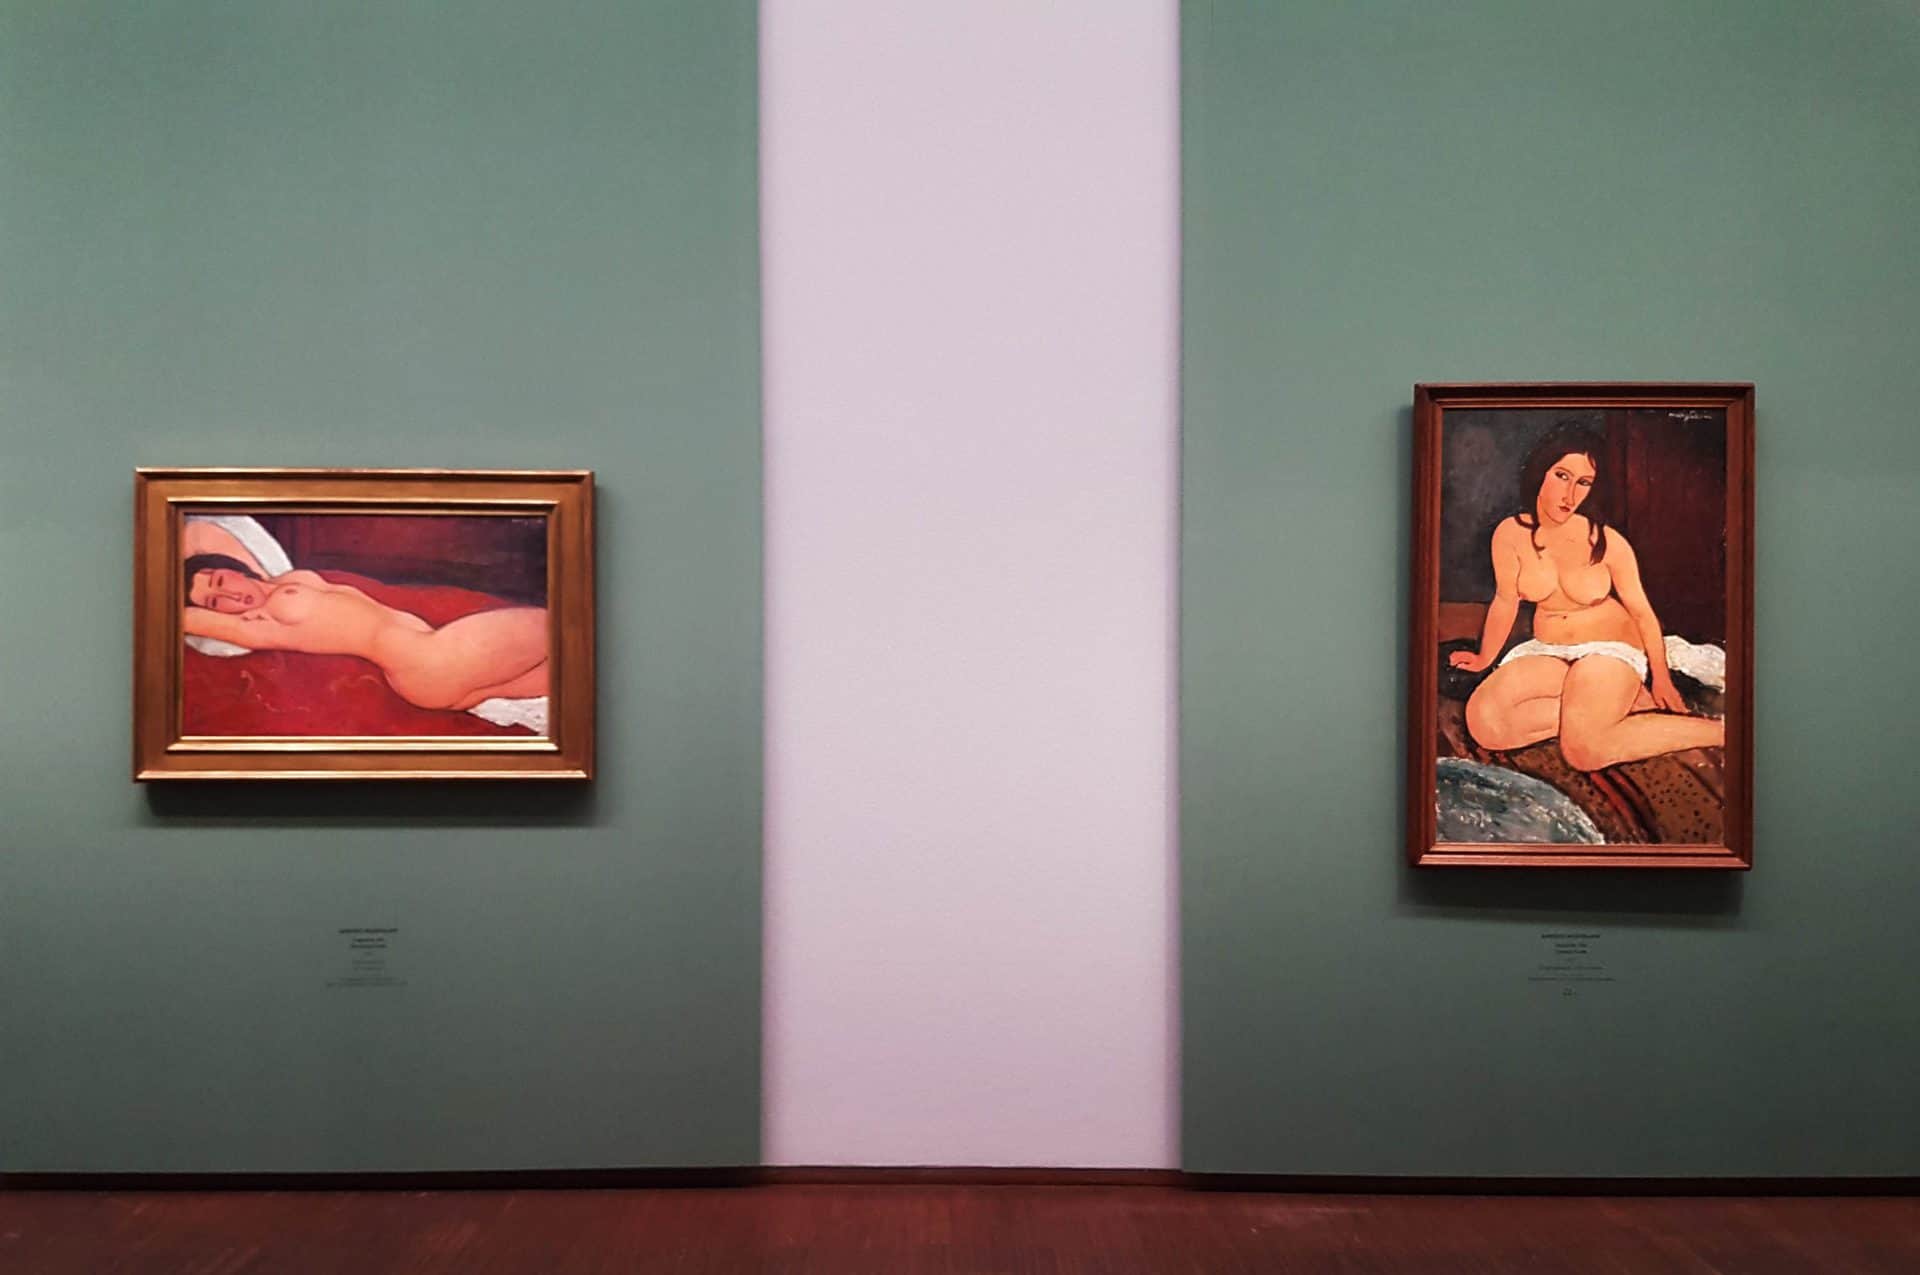 "Nudes" by Modigliani in the Albertina Gallery. Photo: Julia Abramova, 2021